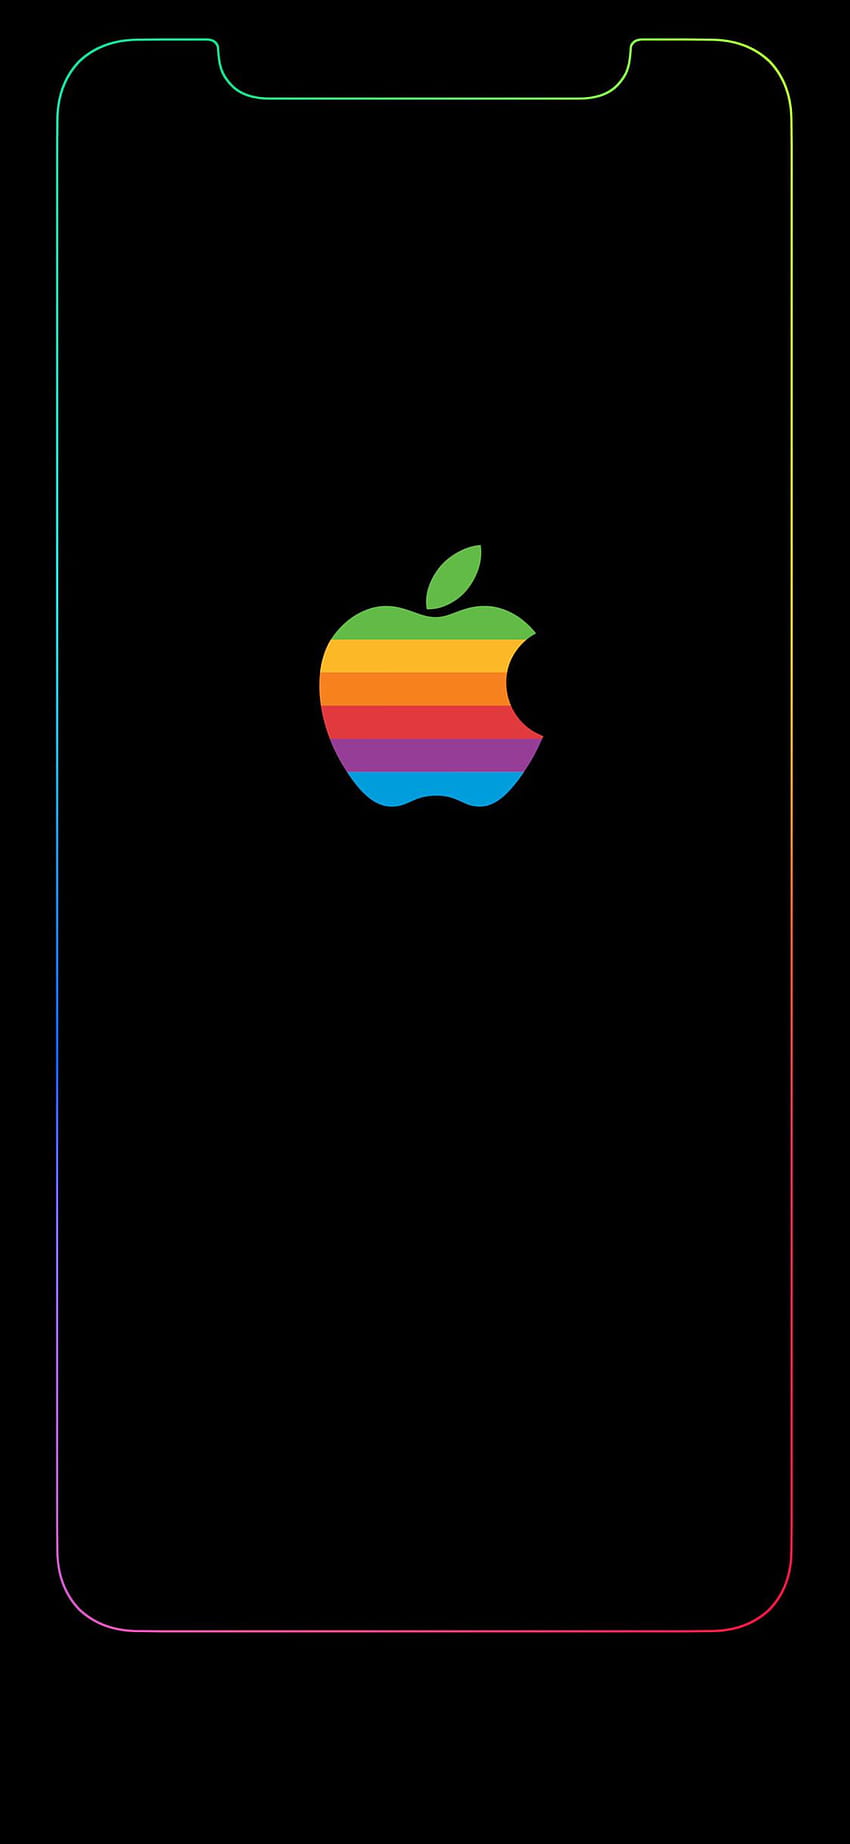 Frontera del arco iris de Iphone Xs Max, frontera del iphone xr fondo de pantalla del teléfono